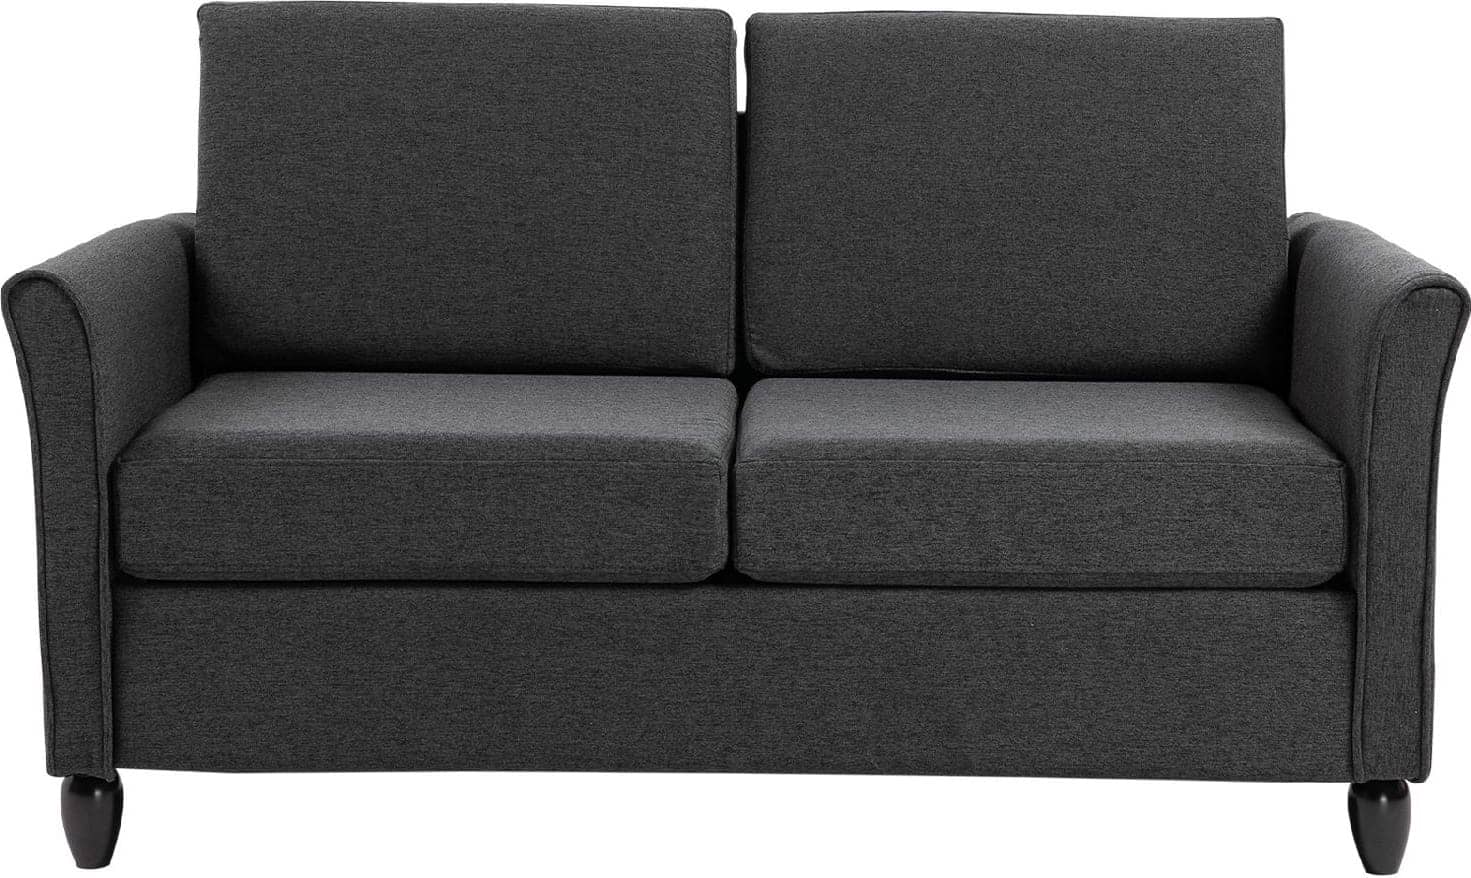 dechome 833653cg divano 2 posti imbottito con rivestimento in lino 141x65x78 cm colore grigio - 833653cg